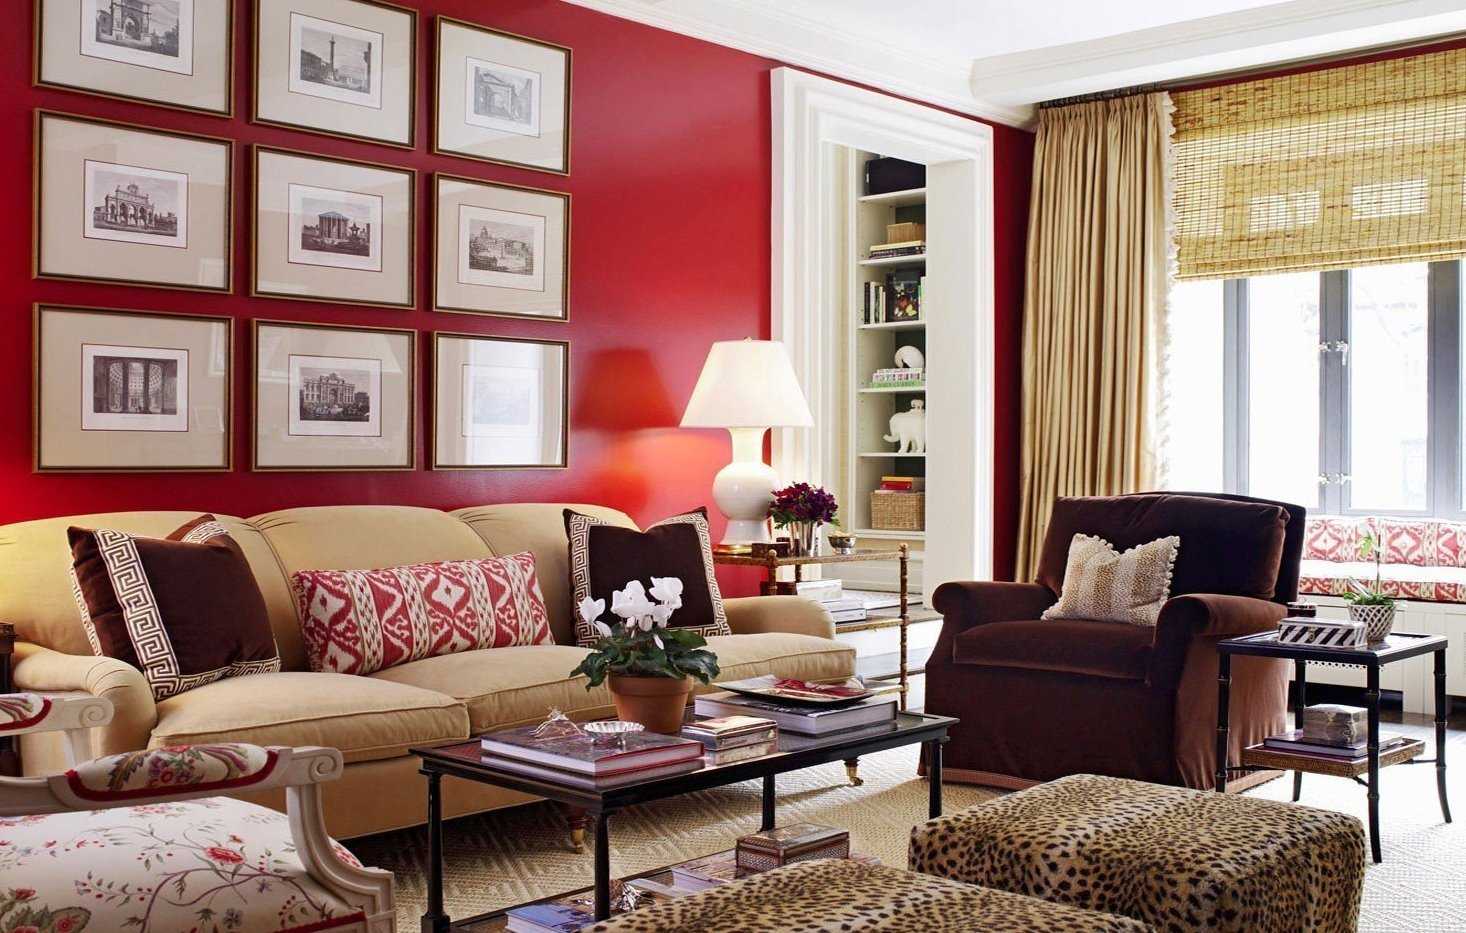 Бордовый цвет – использование в интерьере и для акцента на ярких деталях